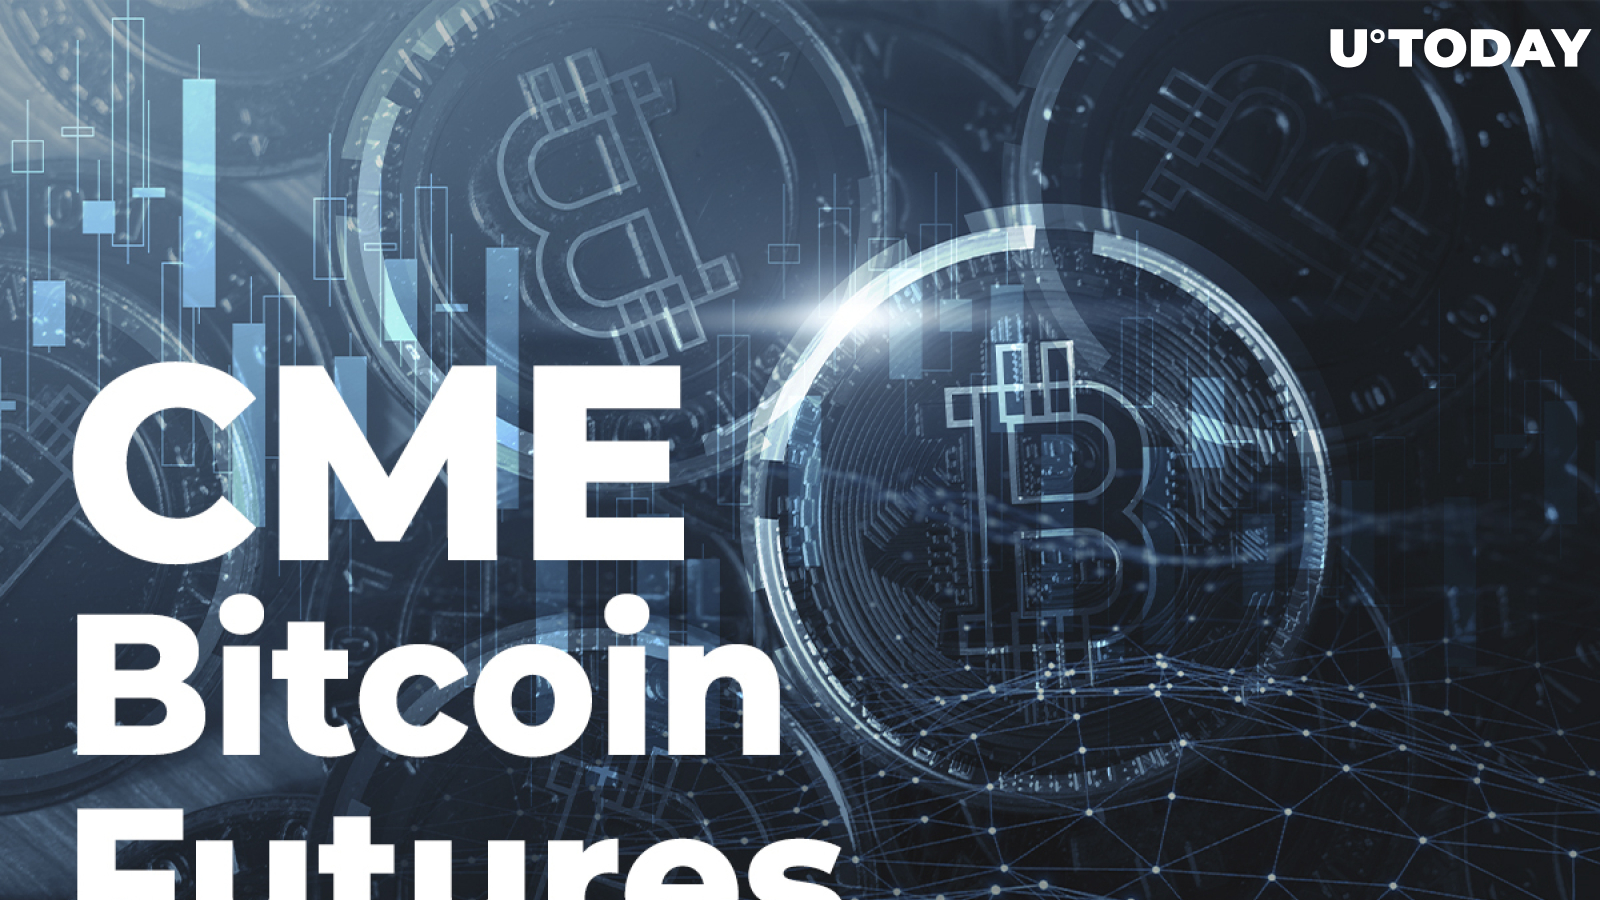 Cme group pradeda bitcoin futures trading - Pranešimai spaudai 